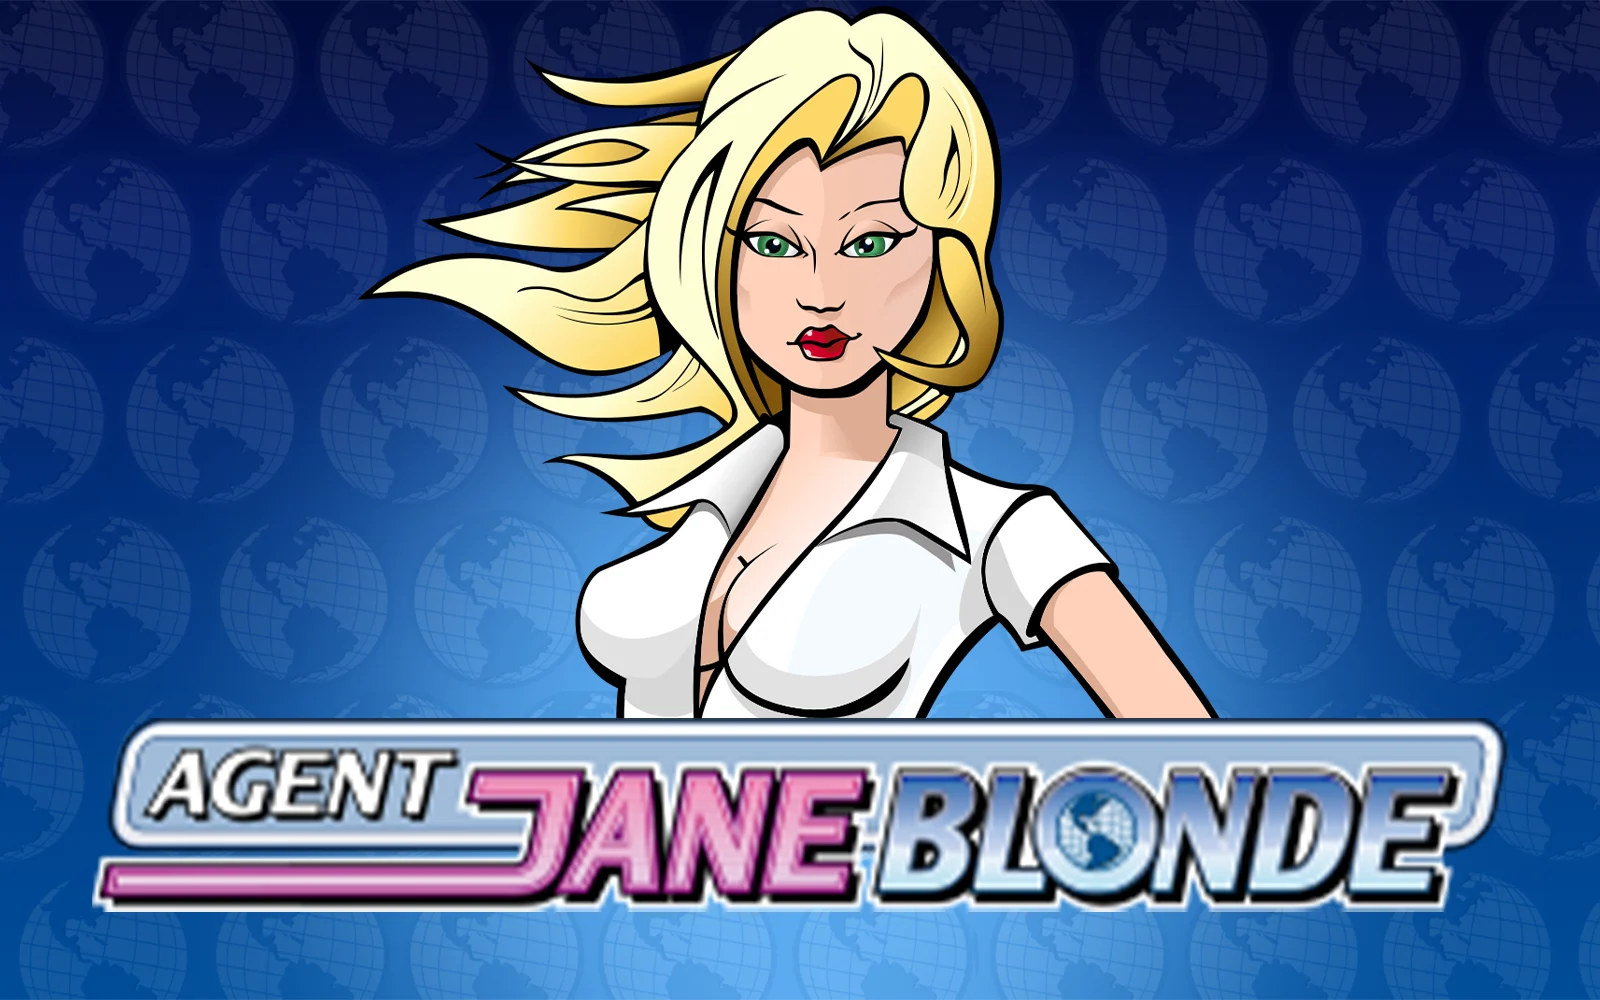 Play Agent Jane Blonde on Starcasino.be online casino